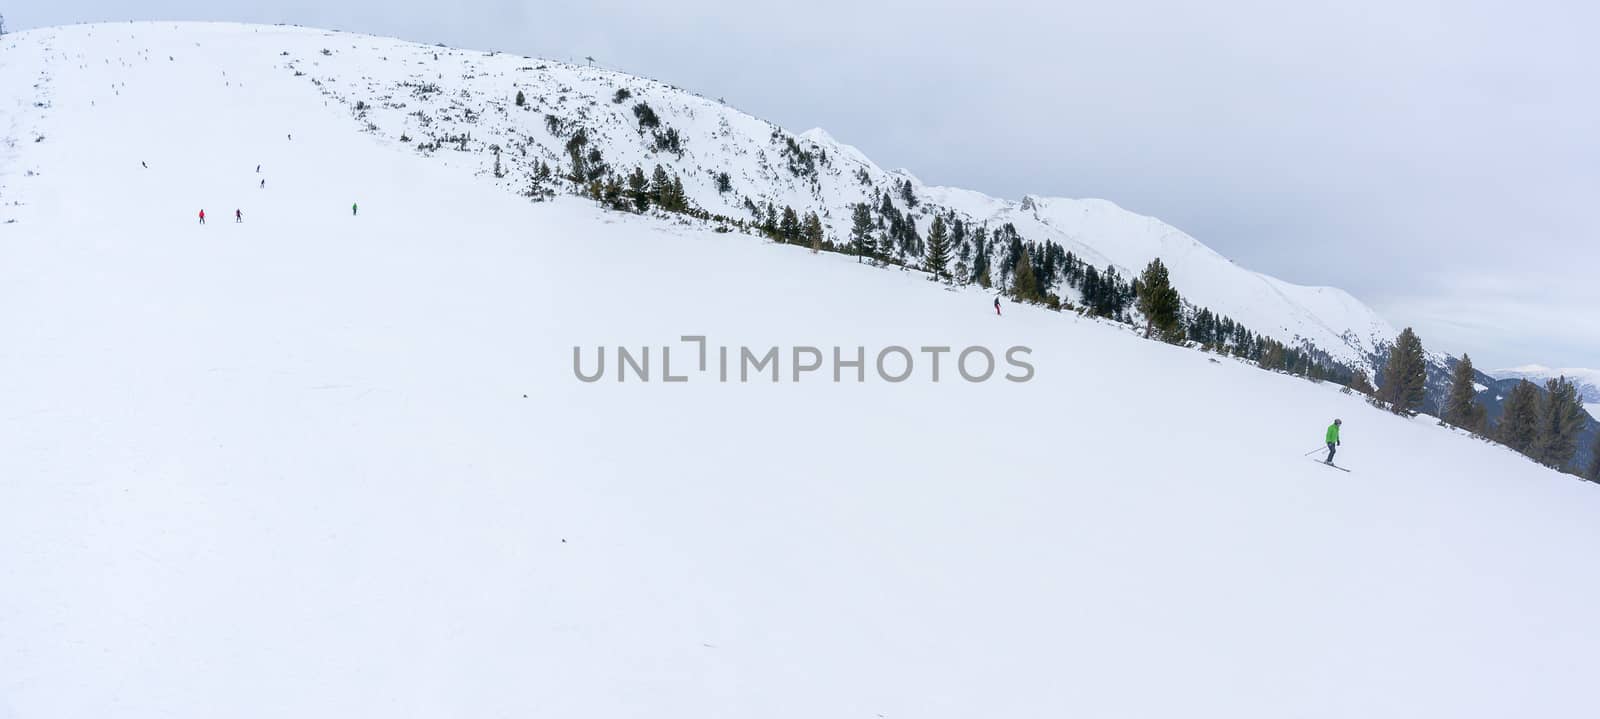 Bansko ski resort in Bulgaria by javax